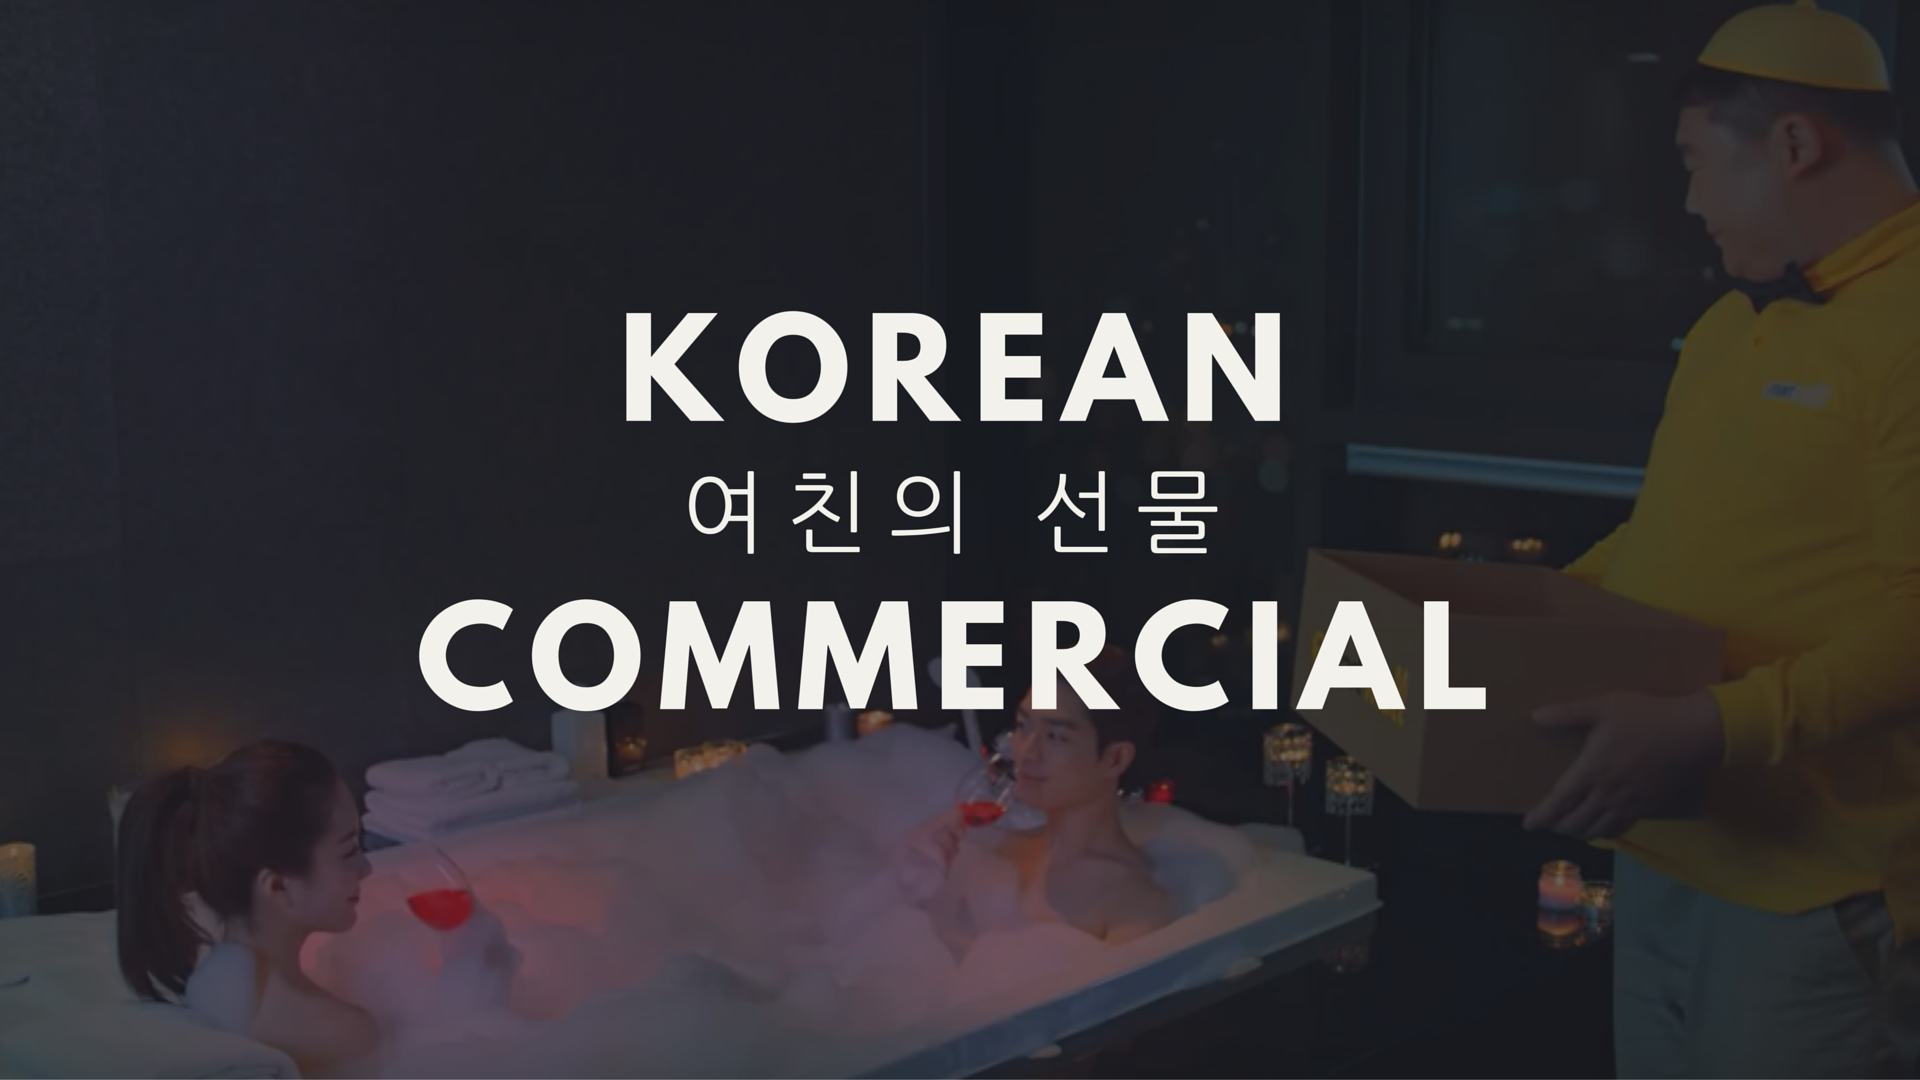 Korean Commercial: 여친의 선물